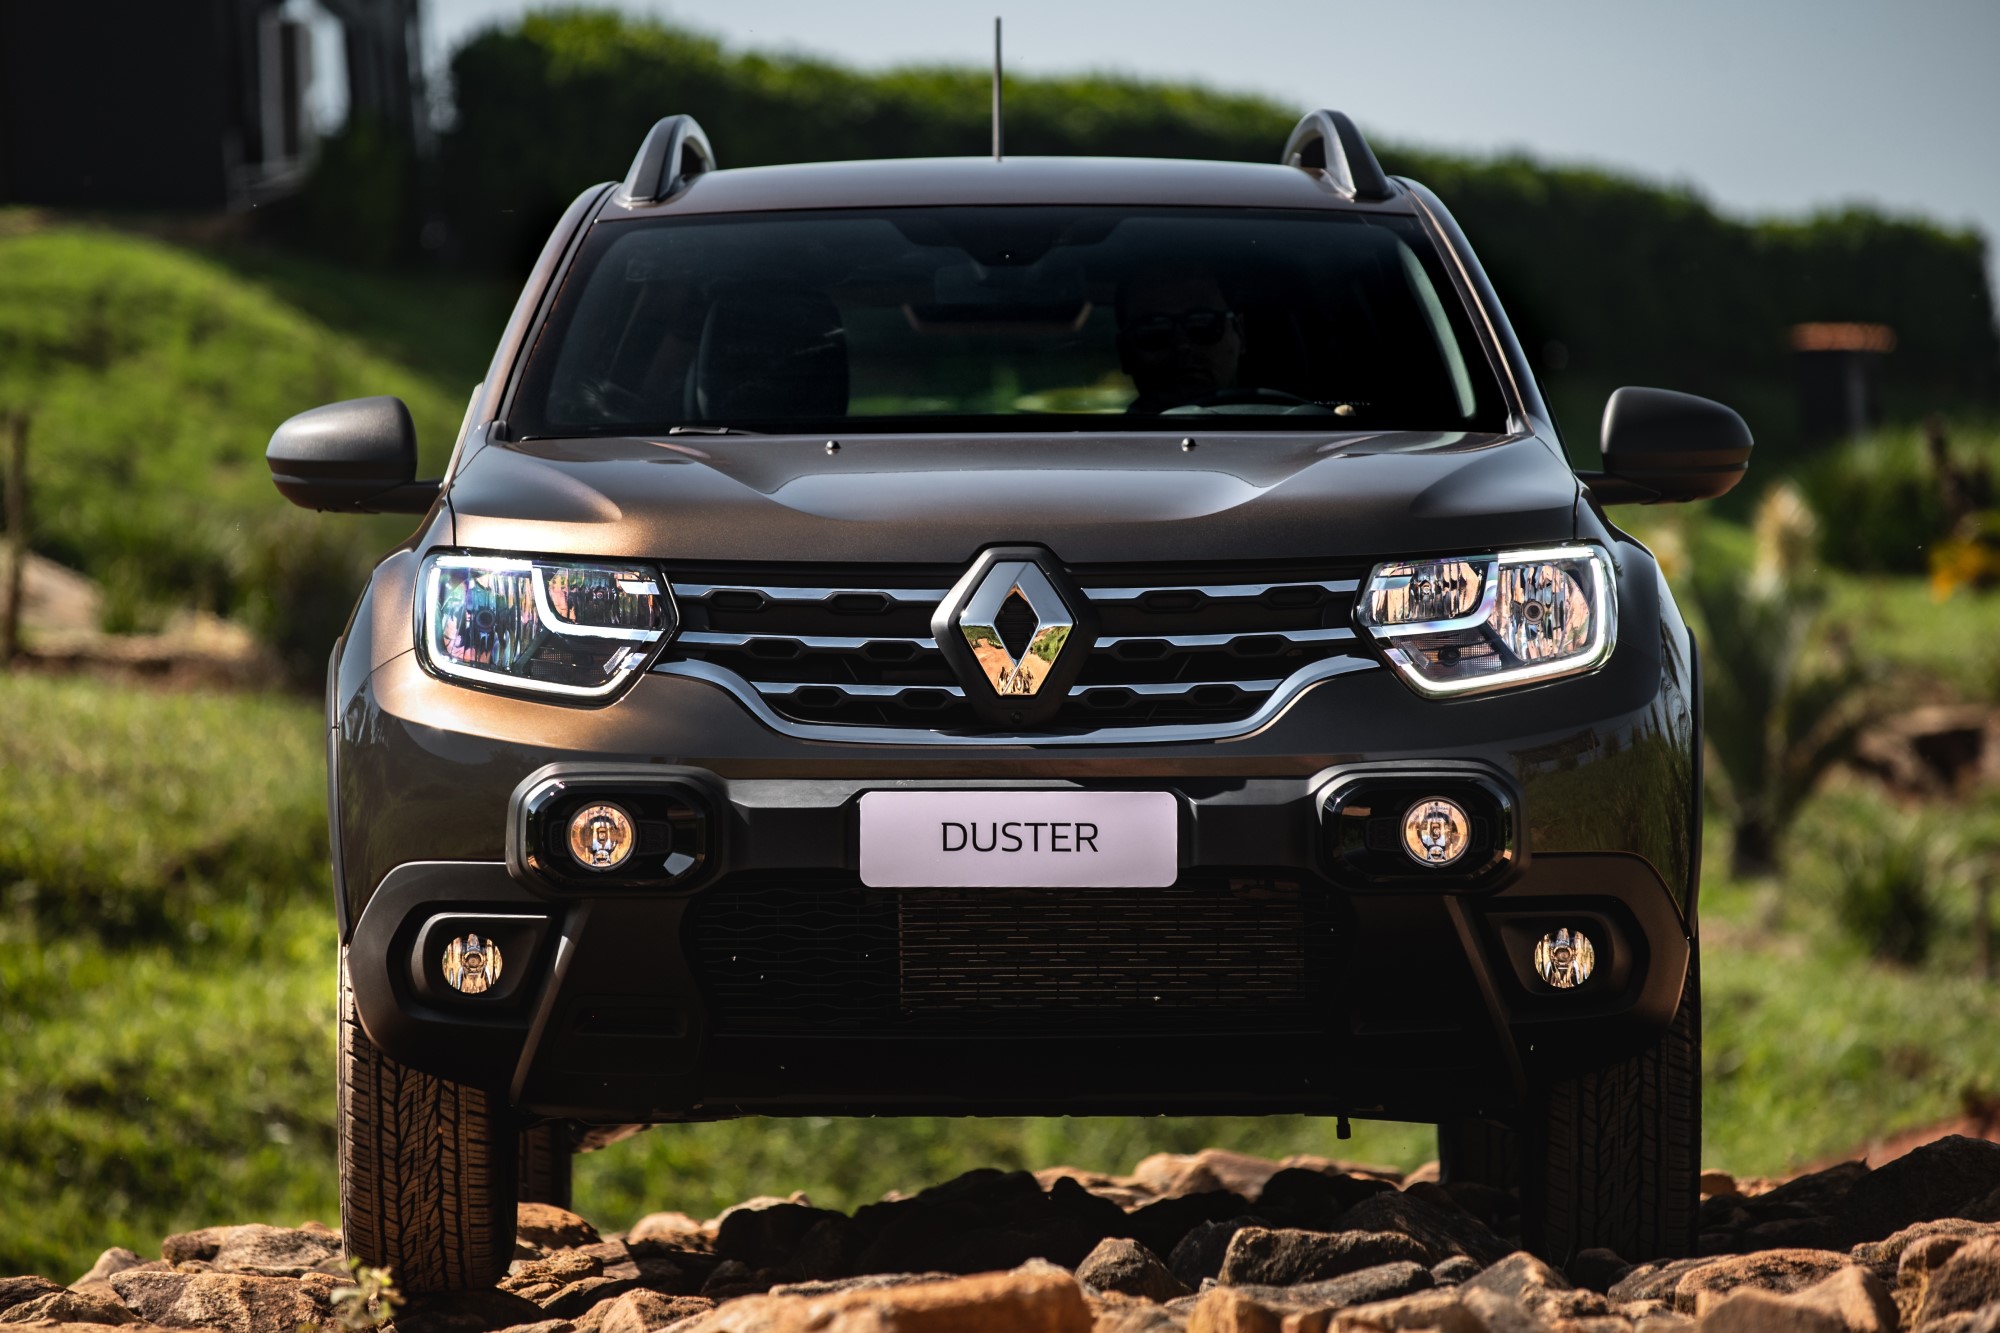 Renault divulga primeiras imagens no novo Duster